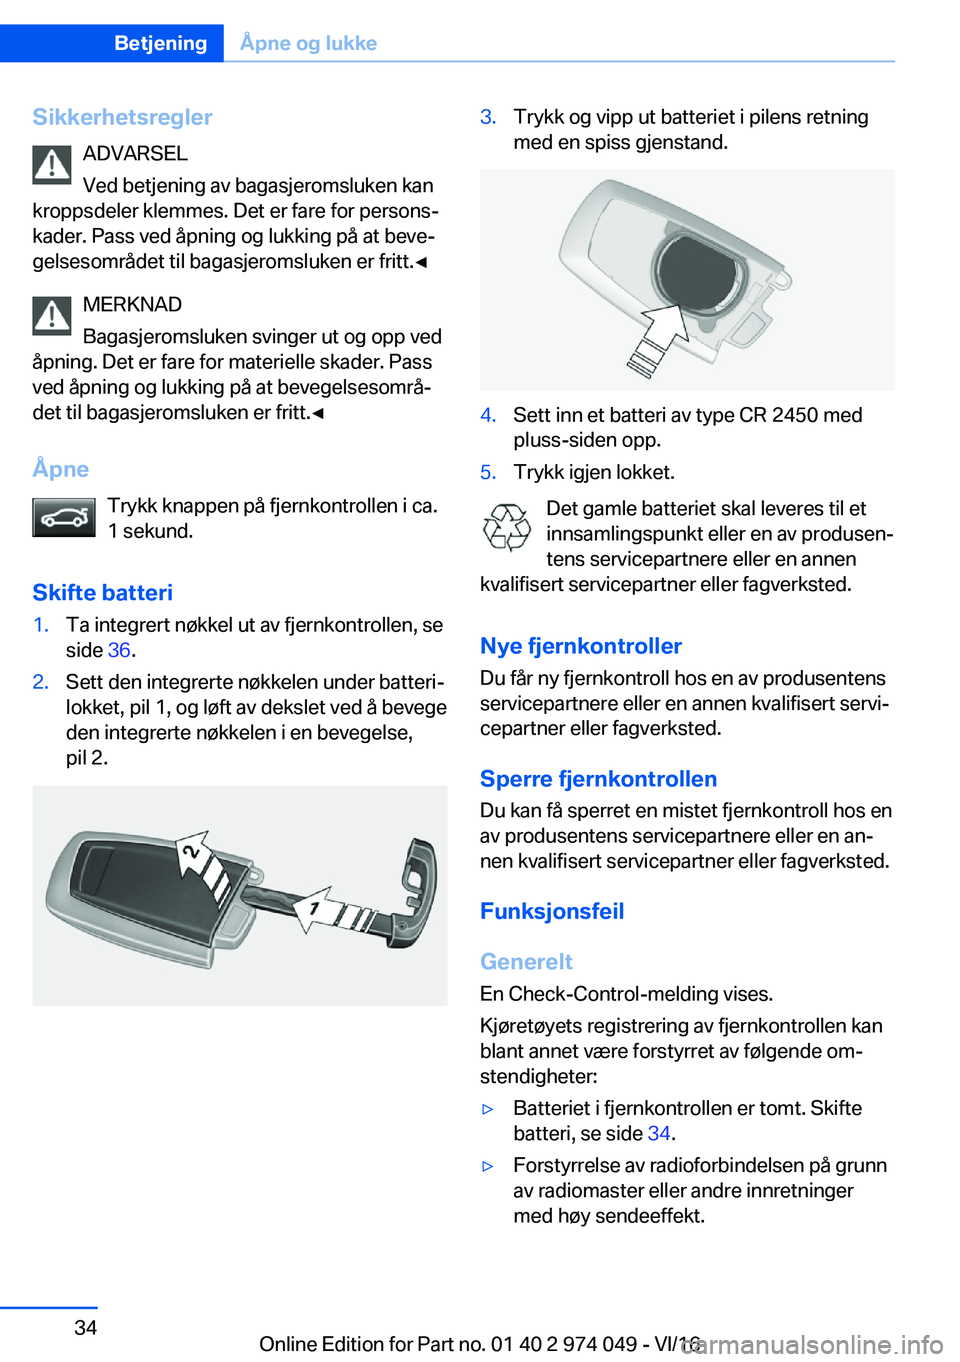 BMW M3 2017  Instructieboekjes (in Dutch) �S�i�k�k�e�r�h�e�t�s�r�e�g�l�e�r�A�D�V�A�R�S�E�L
�V�e�d� �b�e�t�j�e�n�i�n�g� �a�v� �b�a�g�a�s�j�e�r�o�m�s�l�u�k�e�n� �k�a�n
�k�r�o�p�p�s�d�e�l�e�r� �k�l�e�m�m�e�s�.� �D�e�t� �e�r� �f�a�r�e� �f�o�r� �p